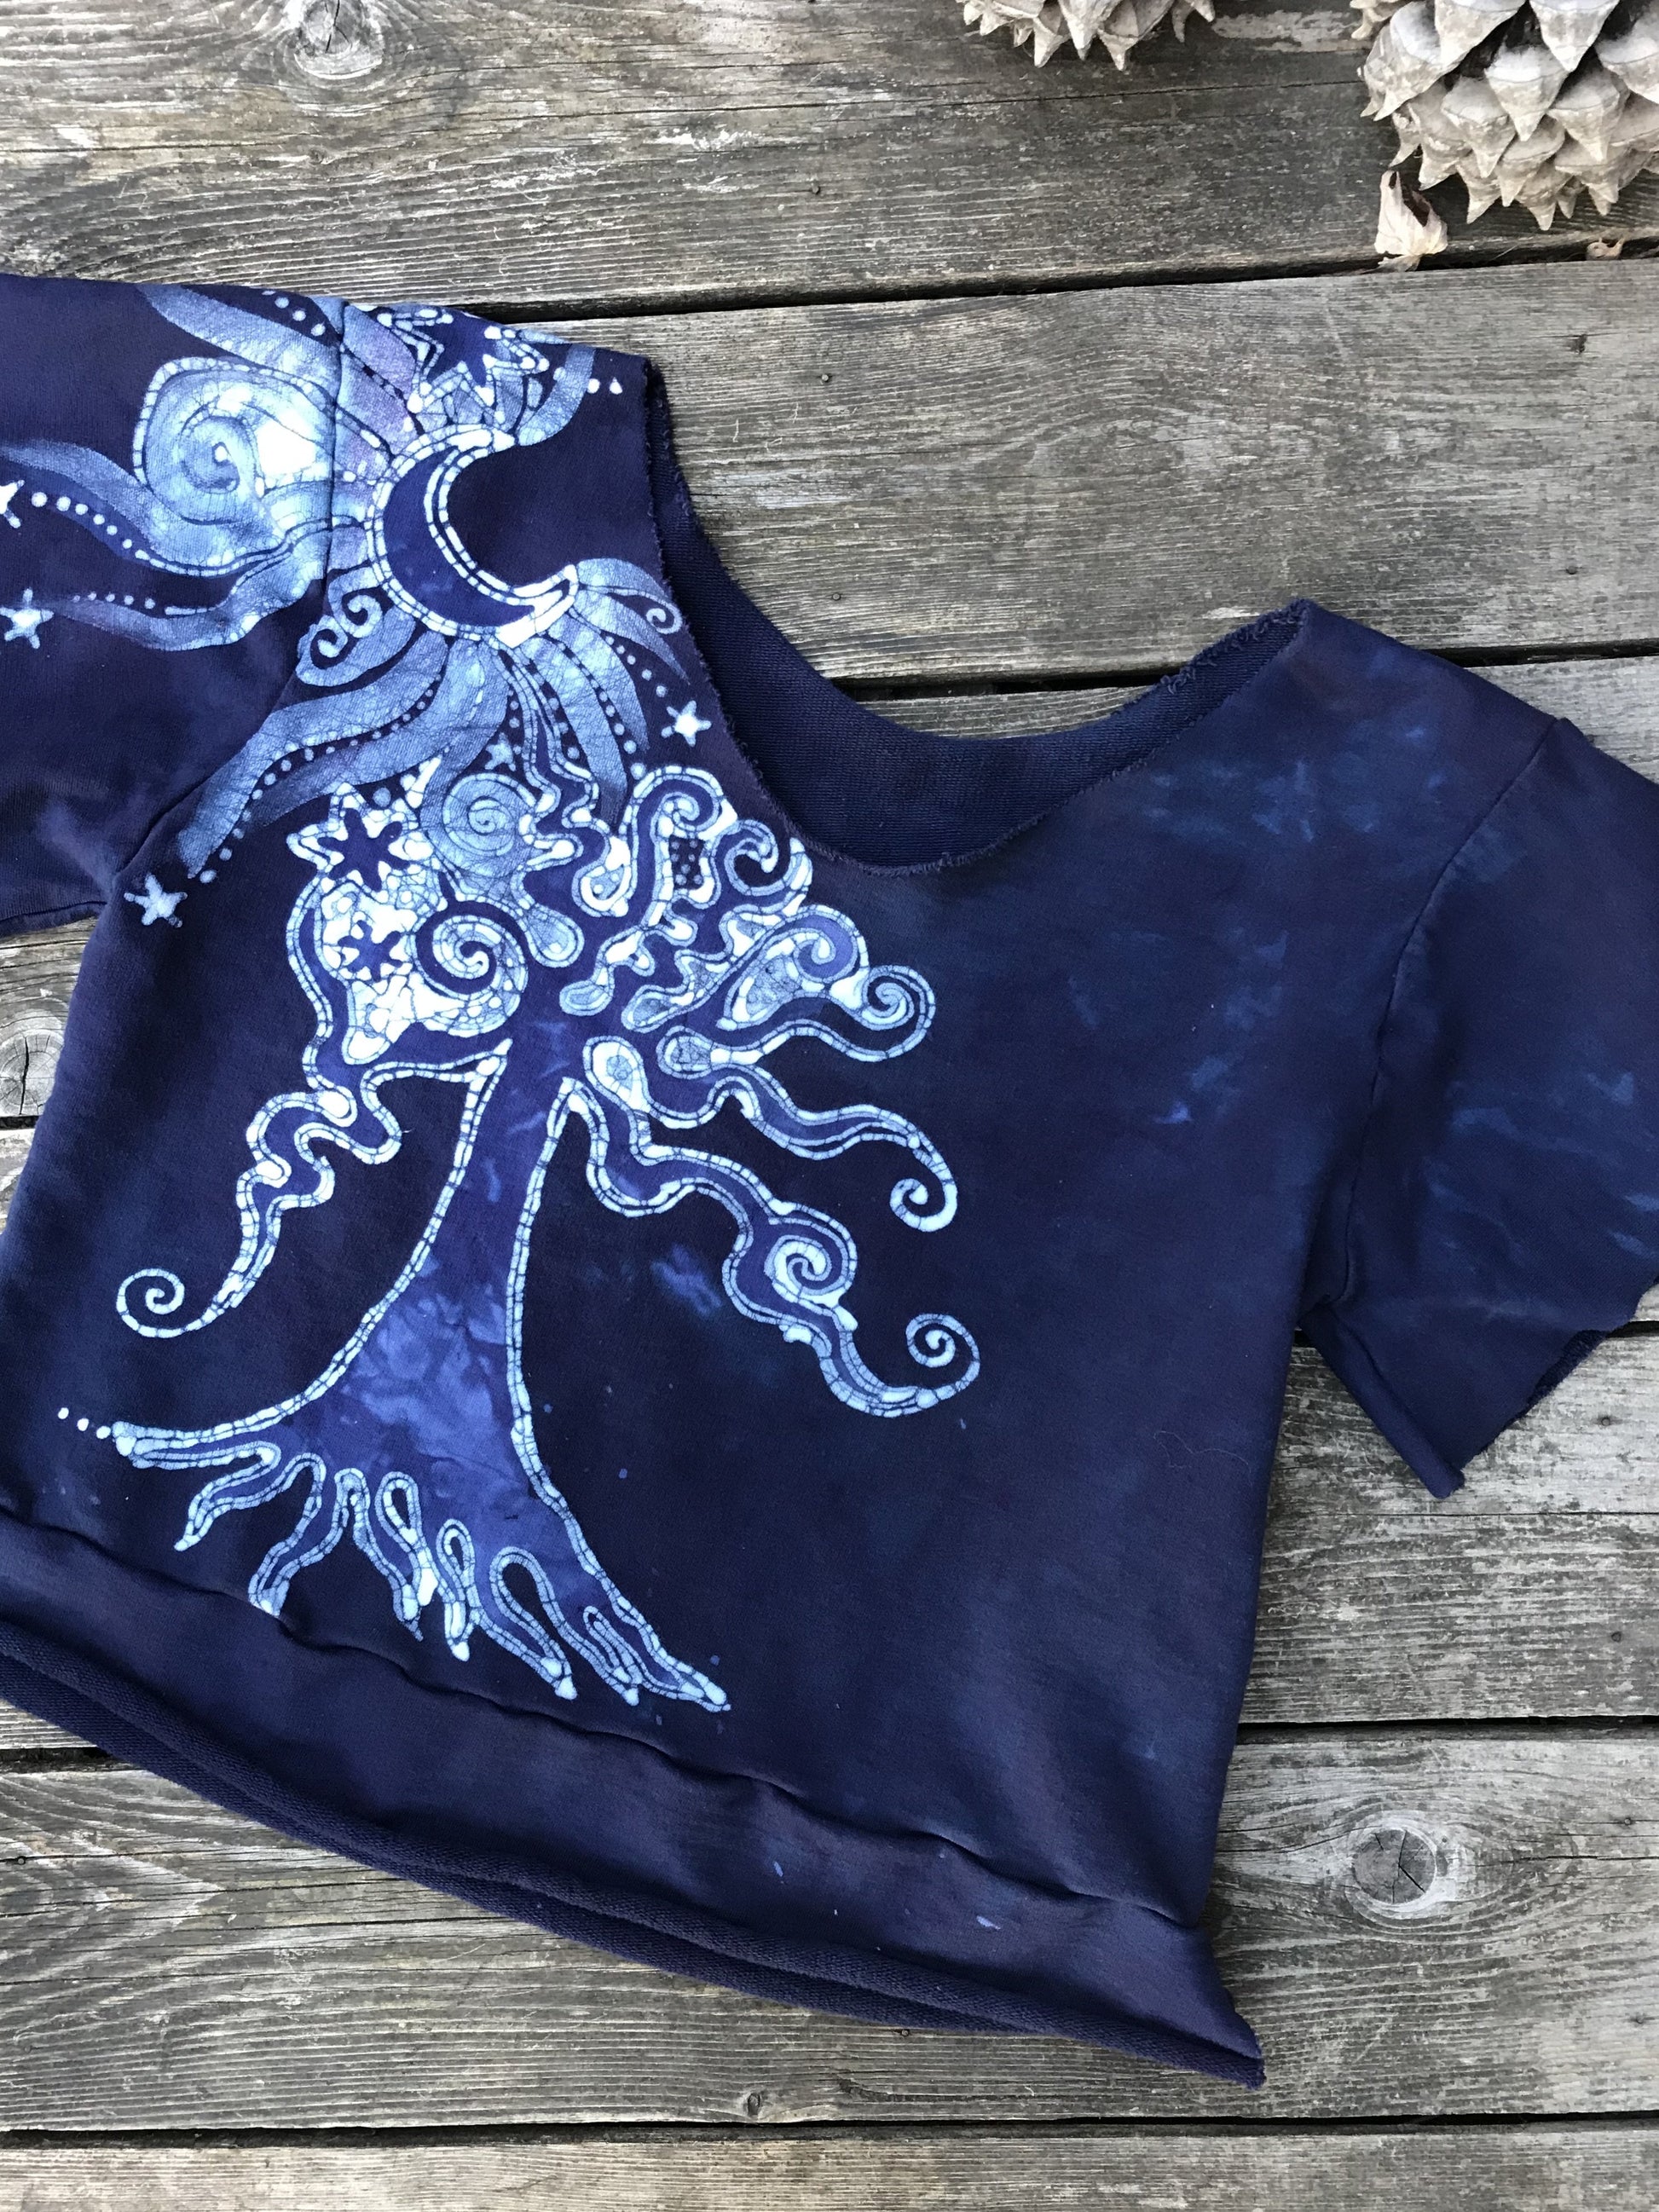 Midnight Blue Moon & Tree Organic Cotton Handmade Batik Top Medium/Large Batik Dresses Batikwalla 